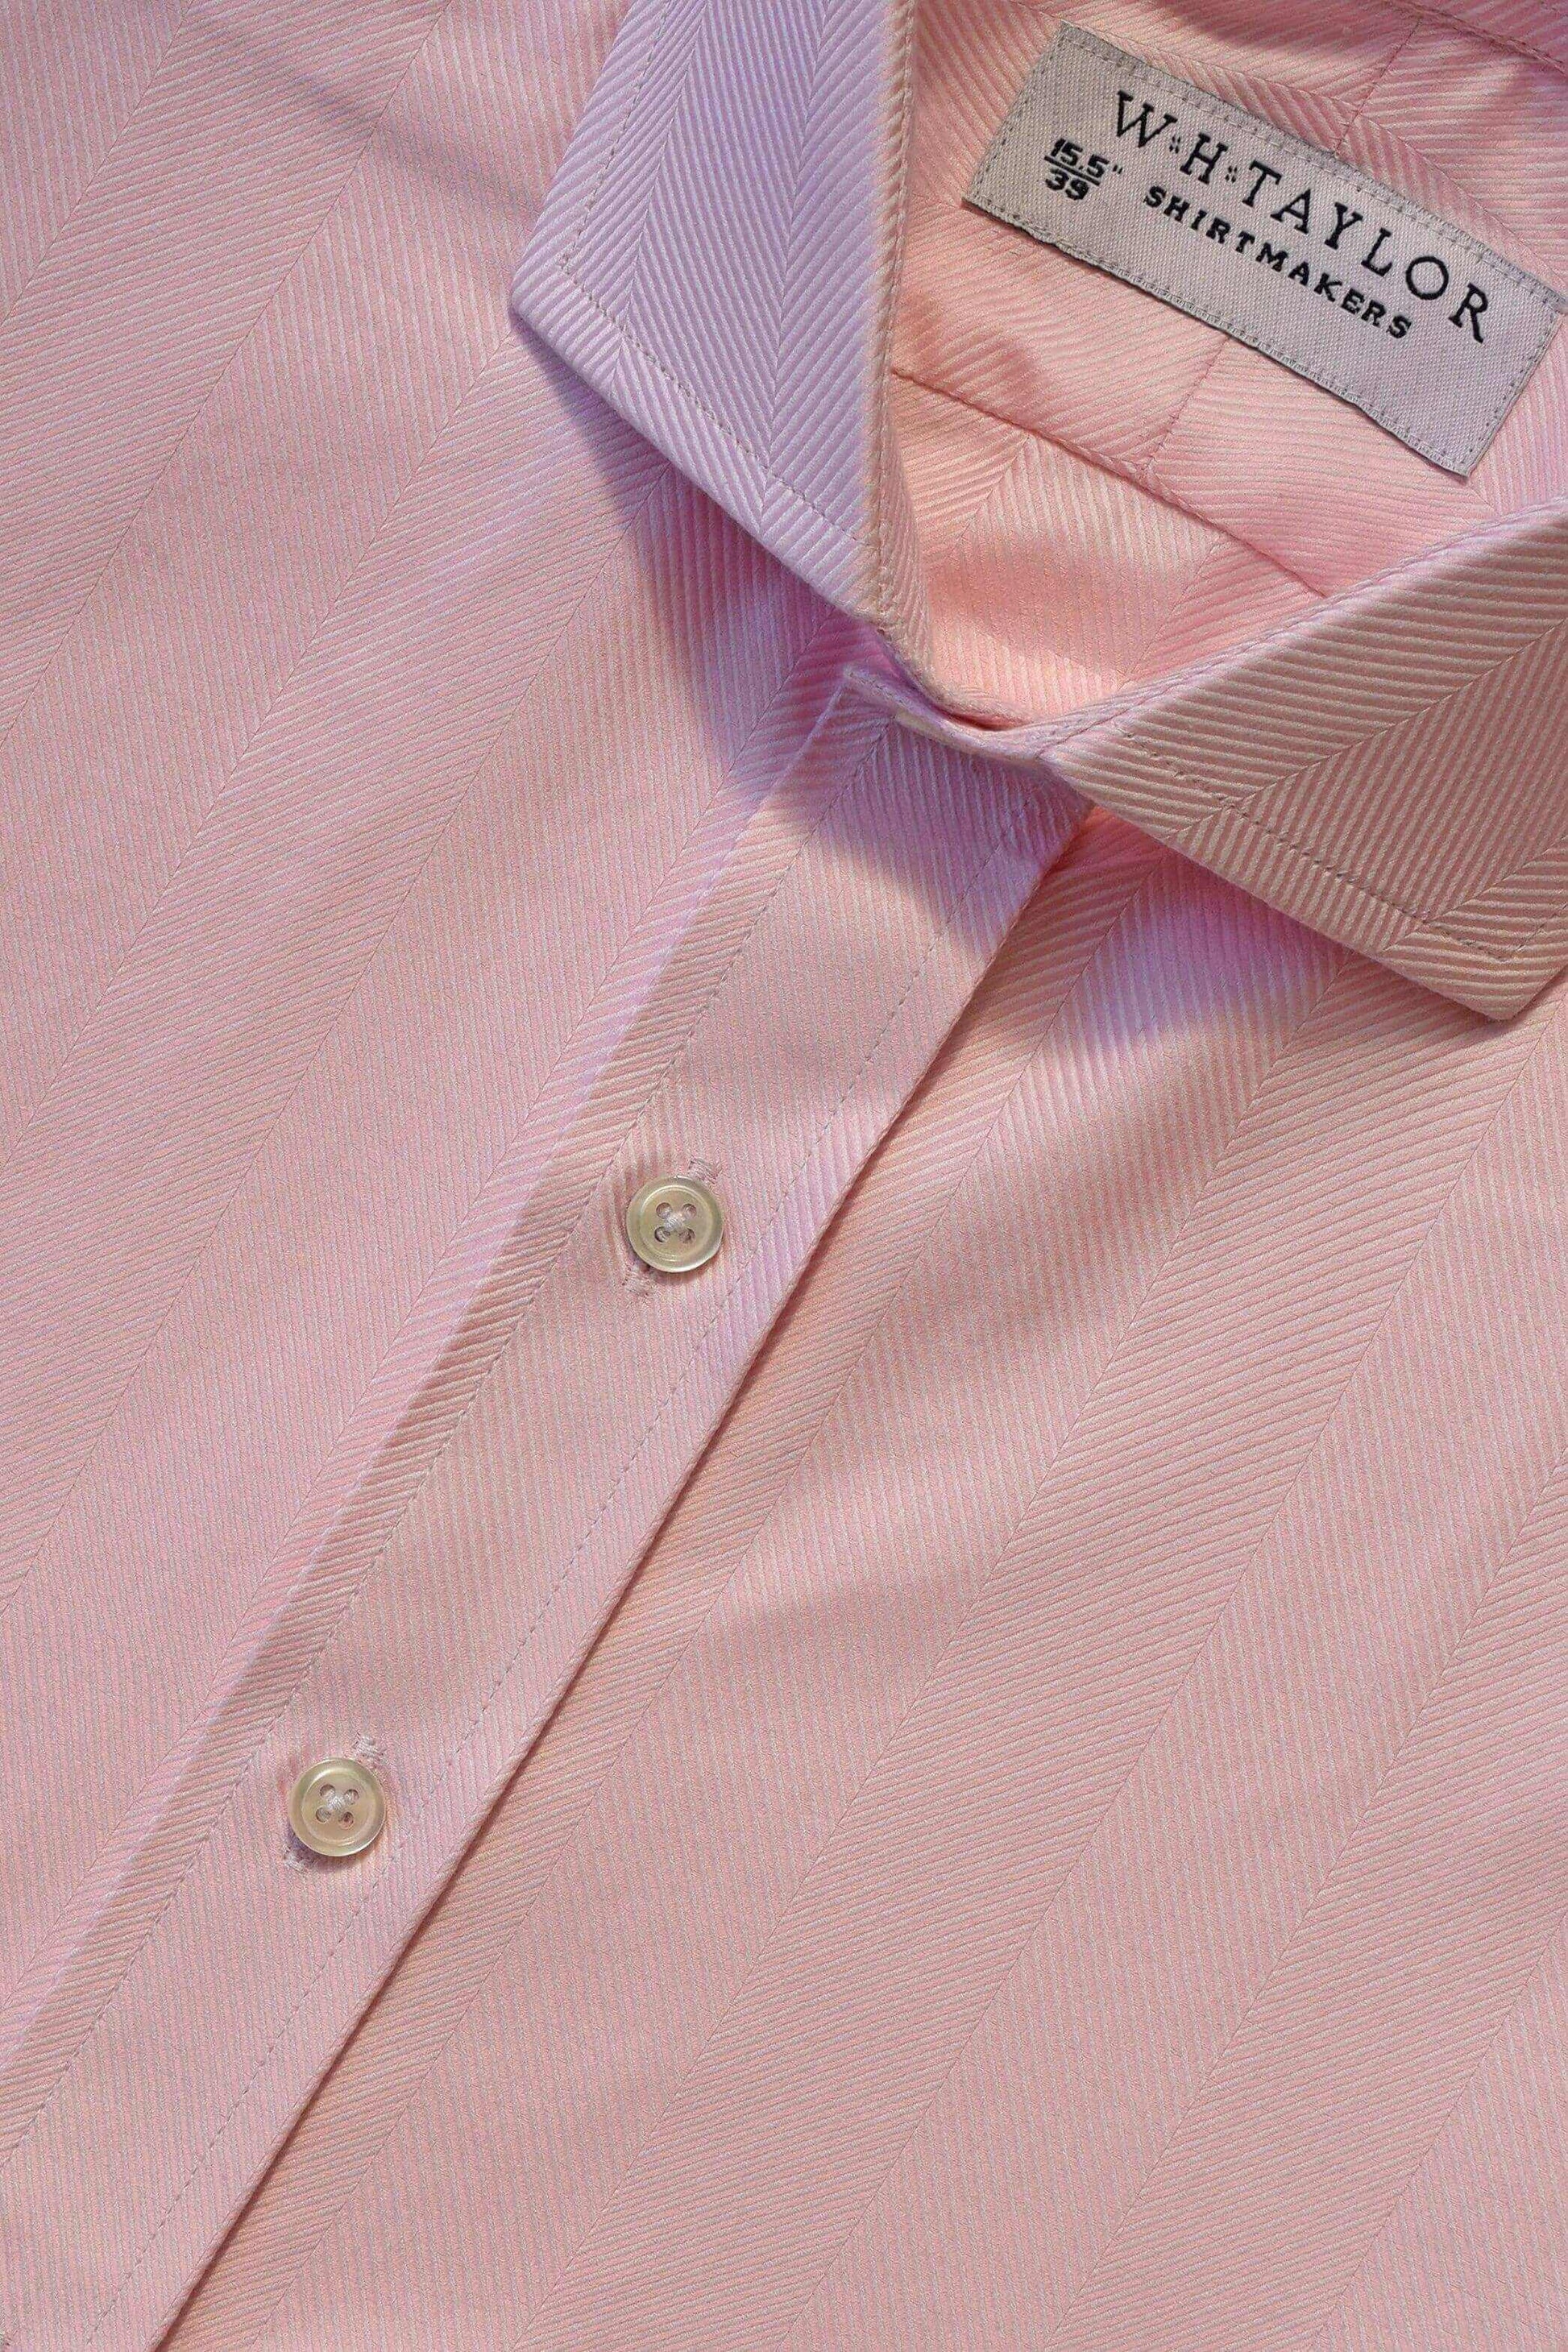 Pink Large Herringbone Stripe Ladies Bespoke Shirt - whtshirtmakers.com